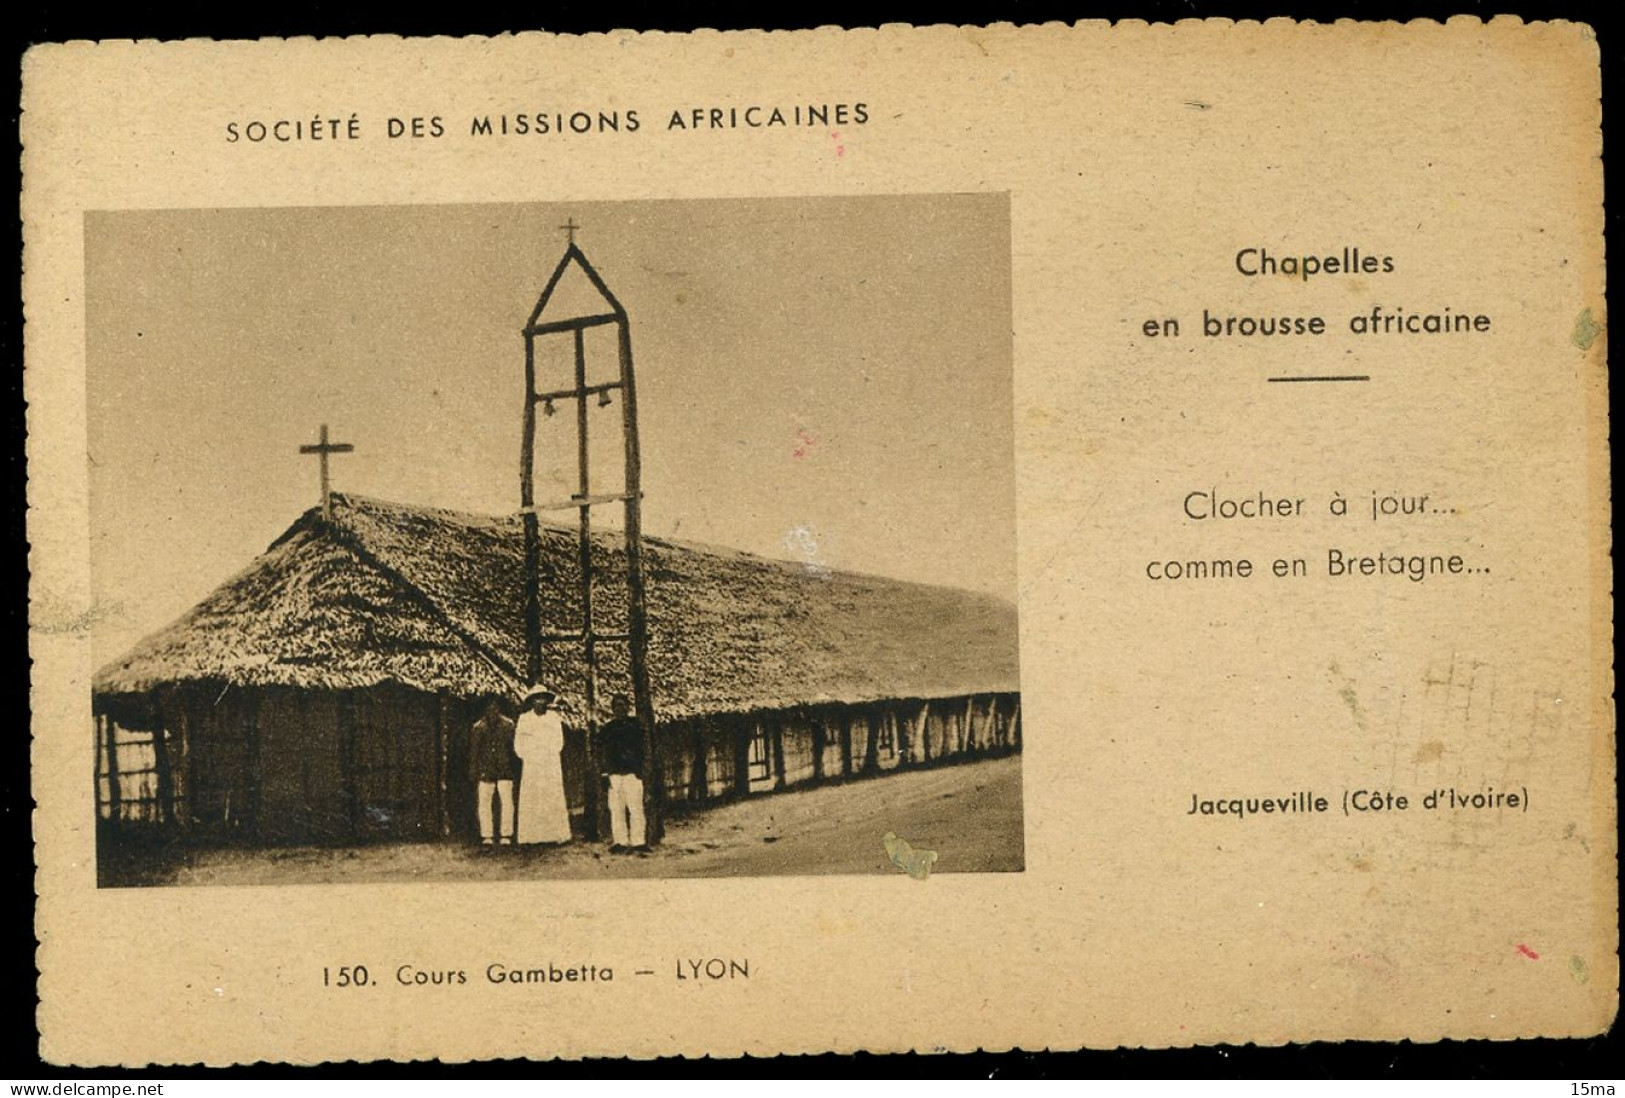 Cote D'Ivoire Jacqueville Société Des Missions Africaines Chapelles En Brousse Africaine - Elfenbeinküste